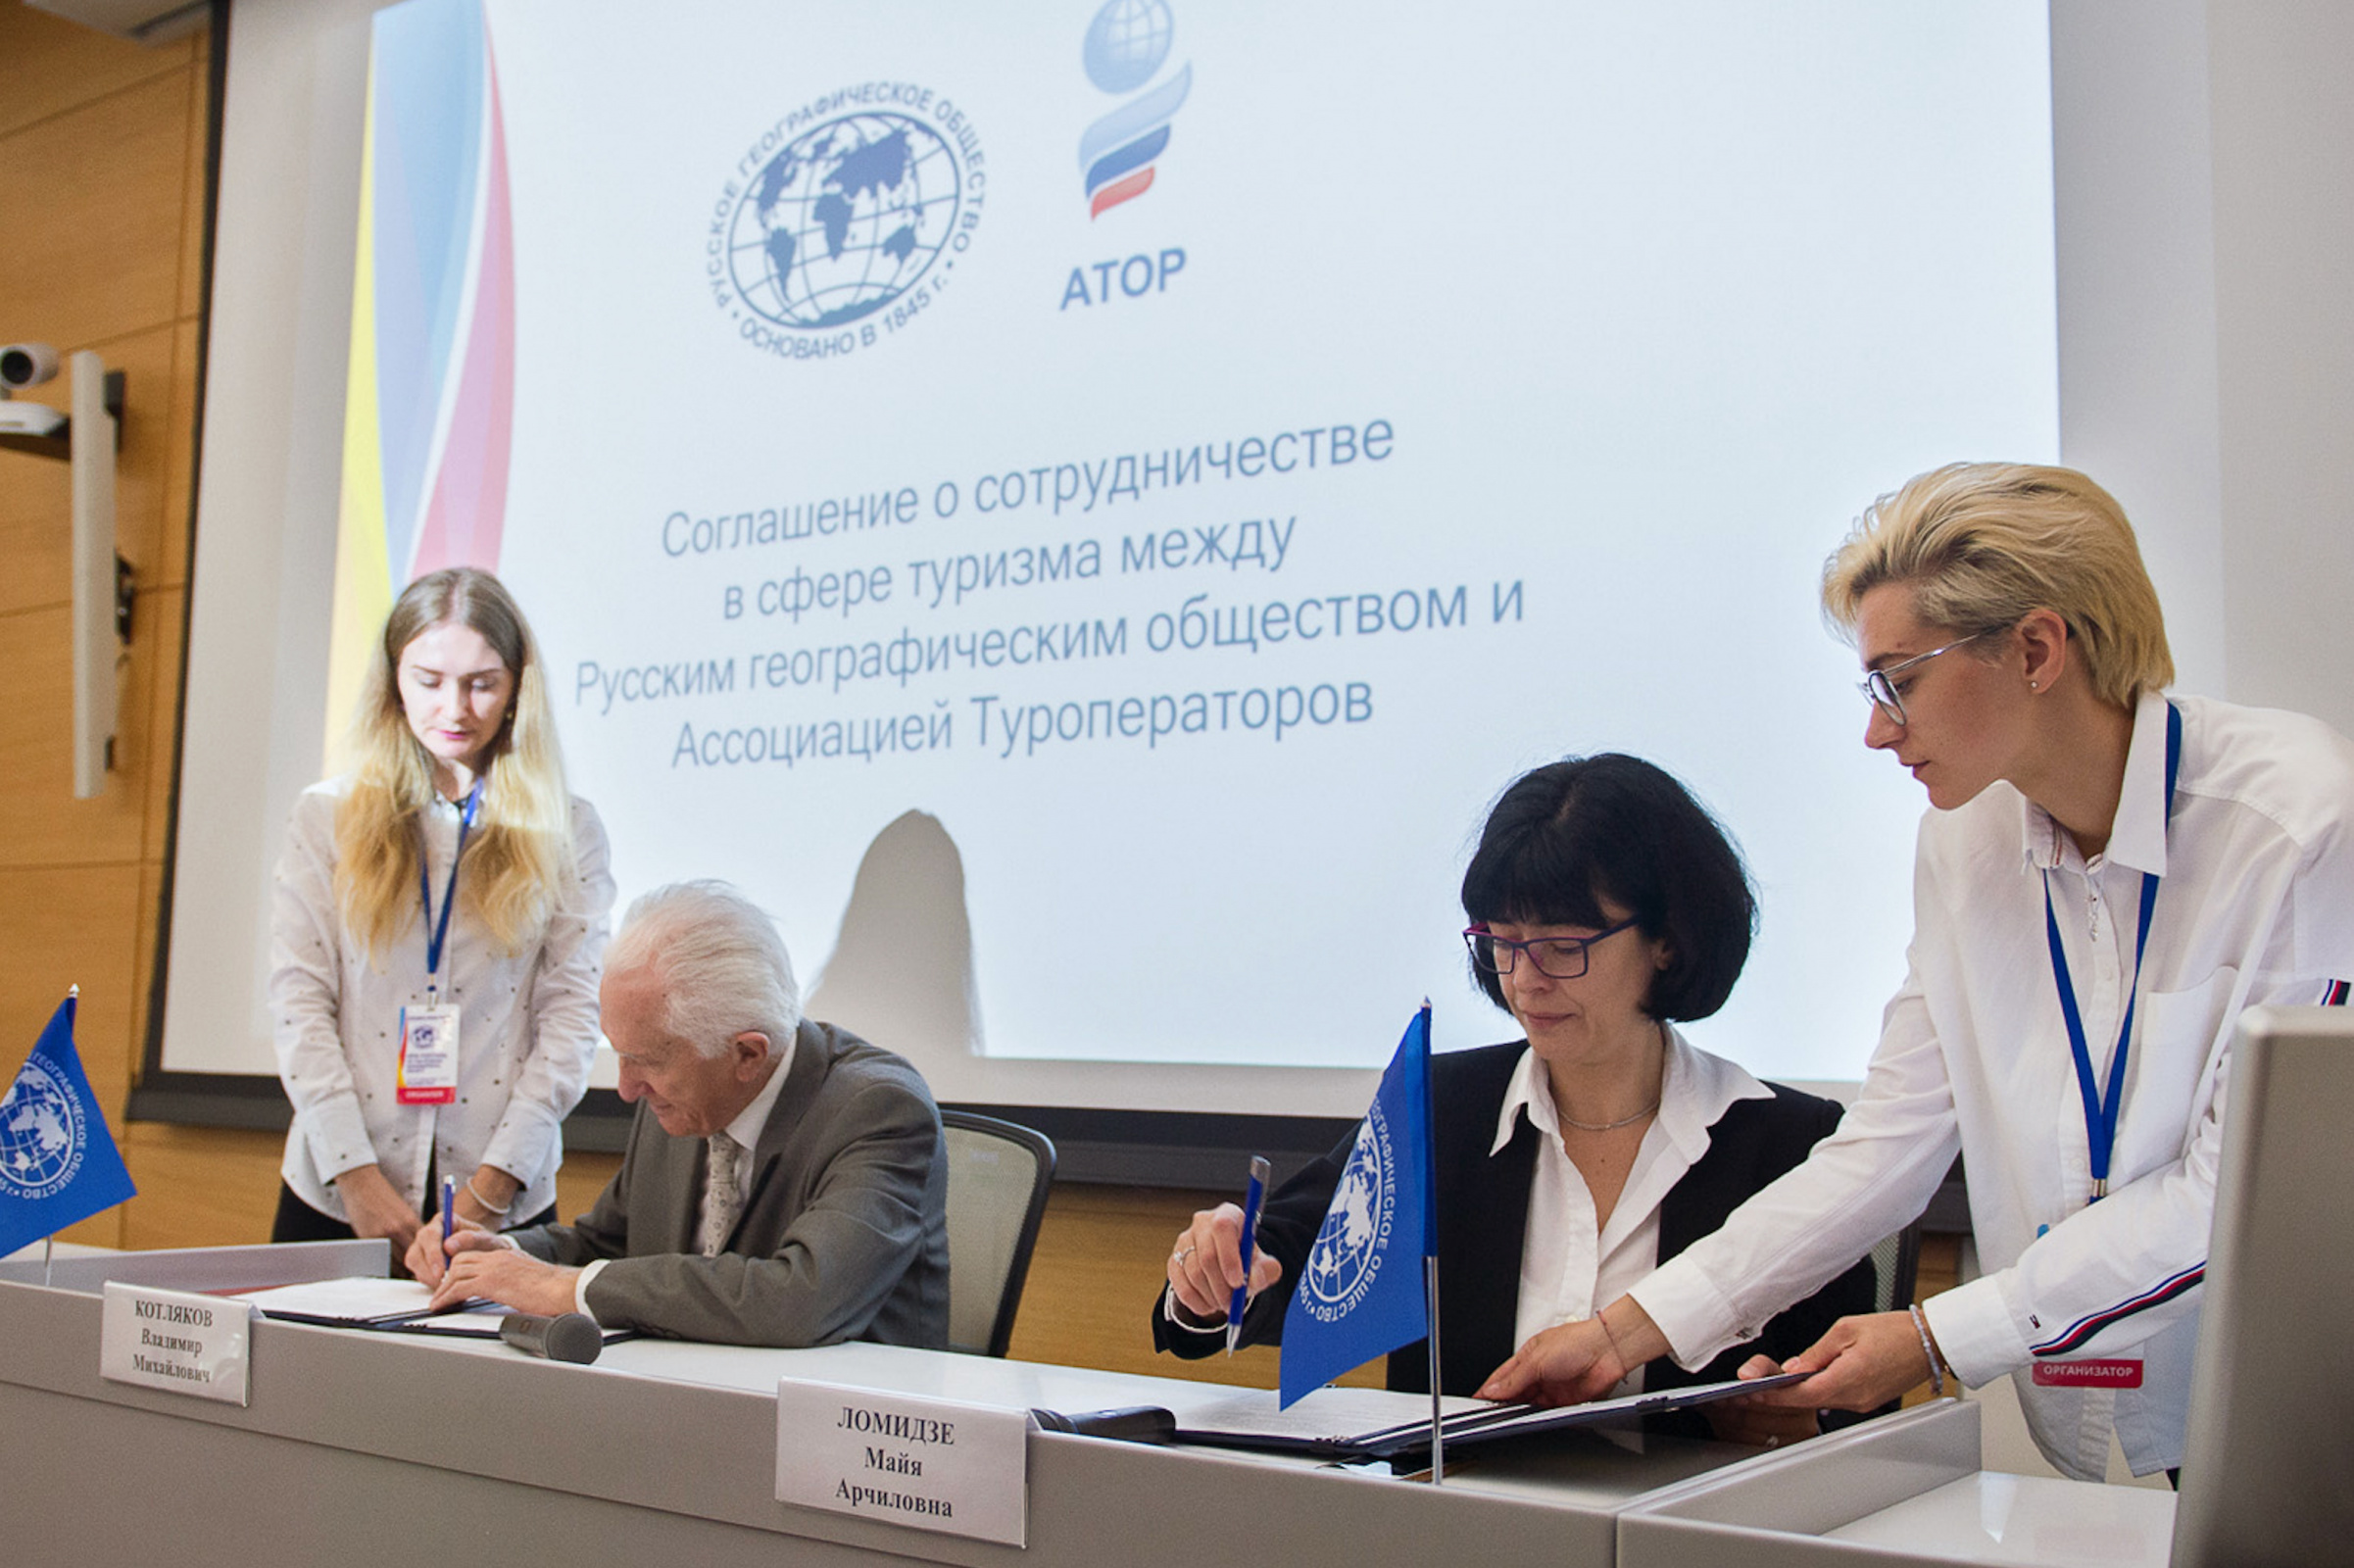 18 сентября 2019 года РГО и Ассоциация туроператоров России (АТОР) подписали соглашение о сотрудничестве. Фото: Екатерина Рудзянская